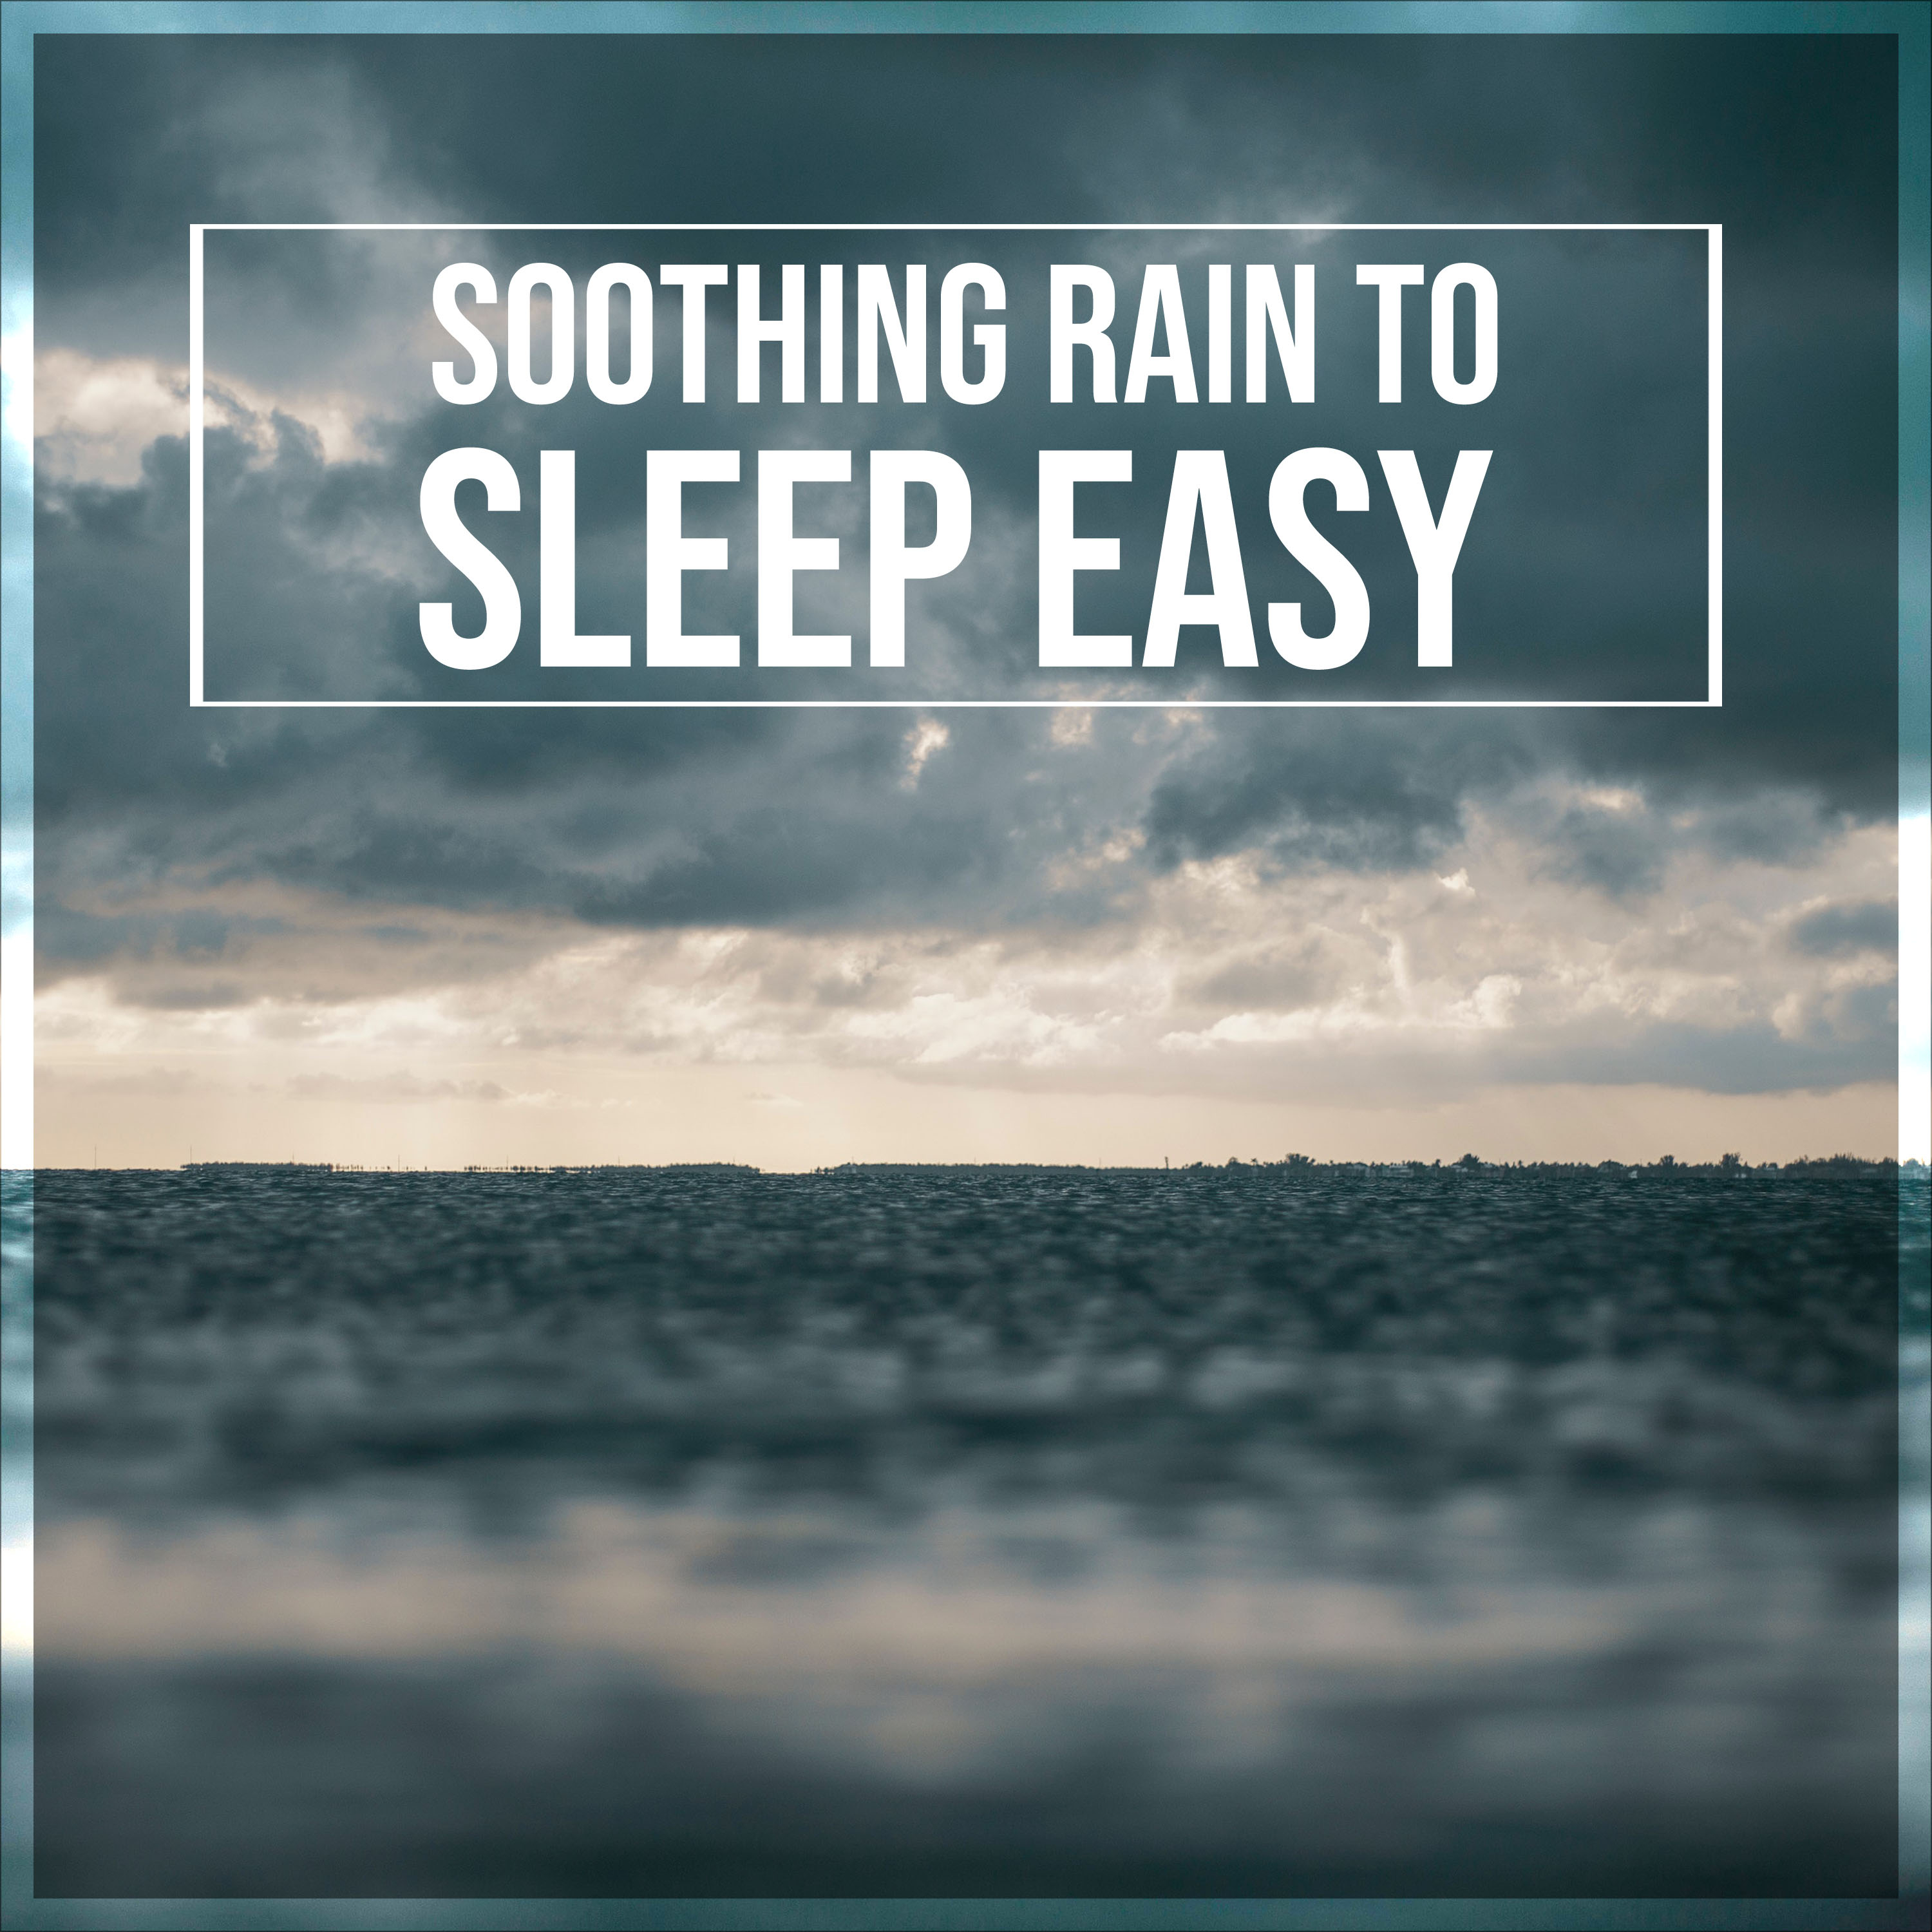 15 Soothing Rain Album to Sleep Easy